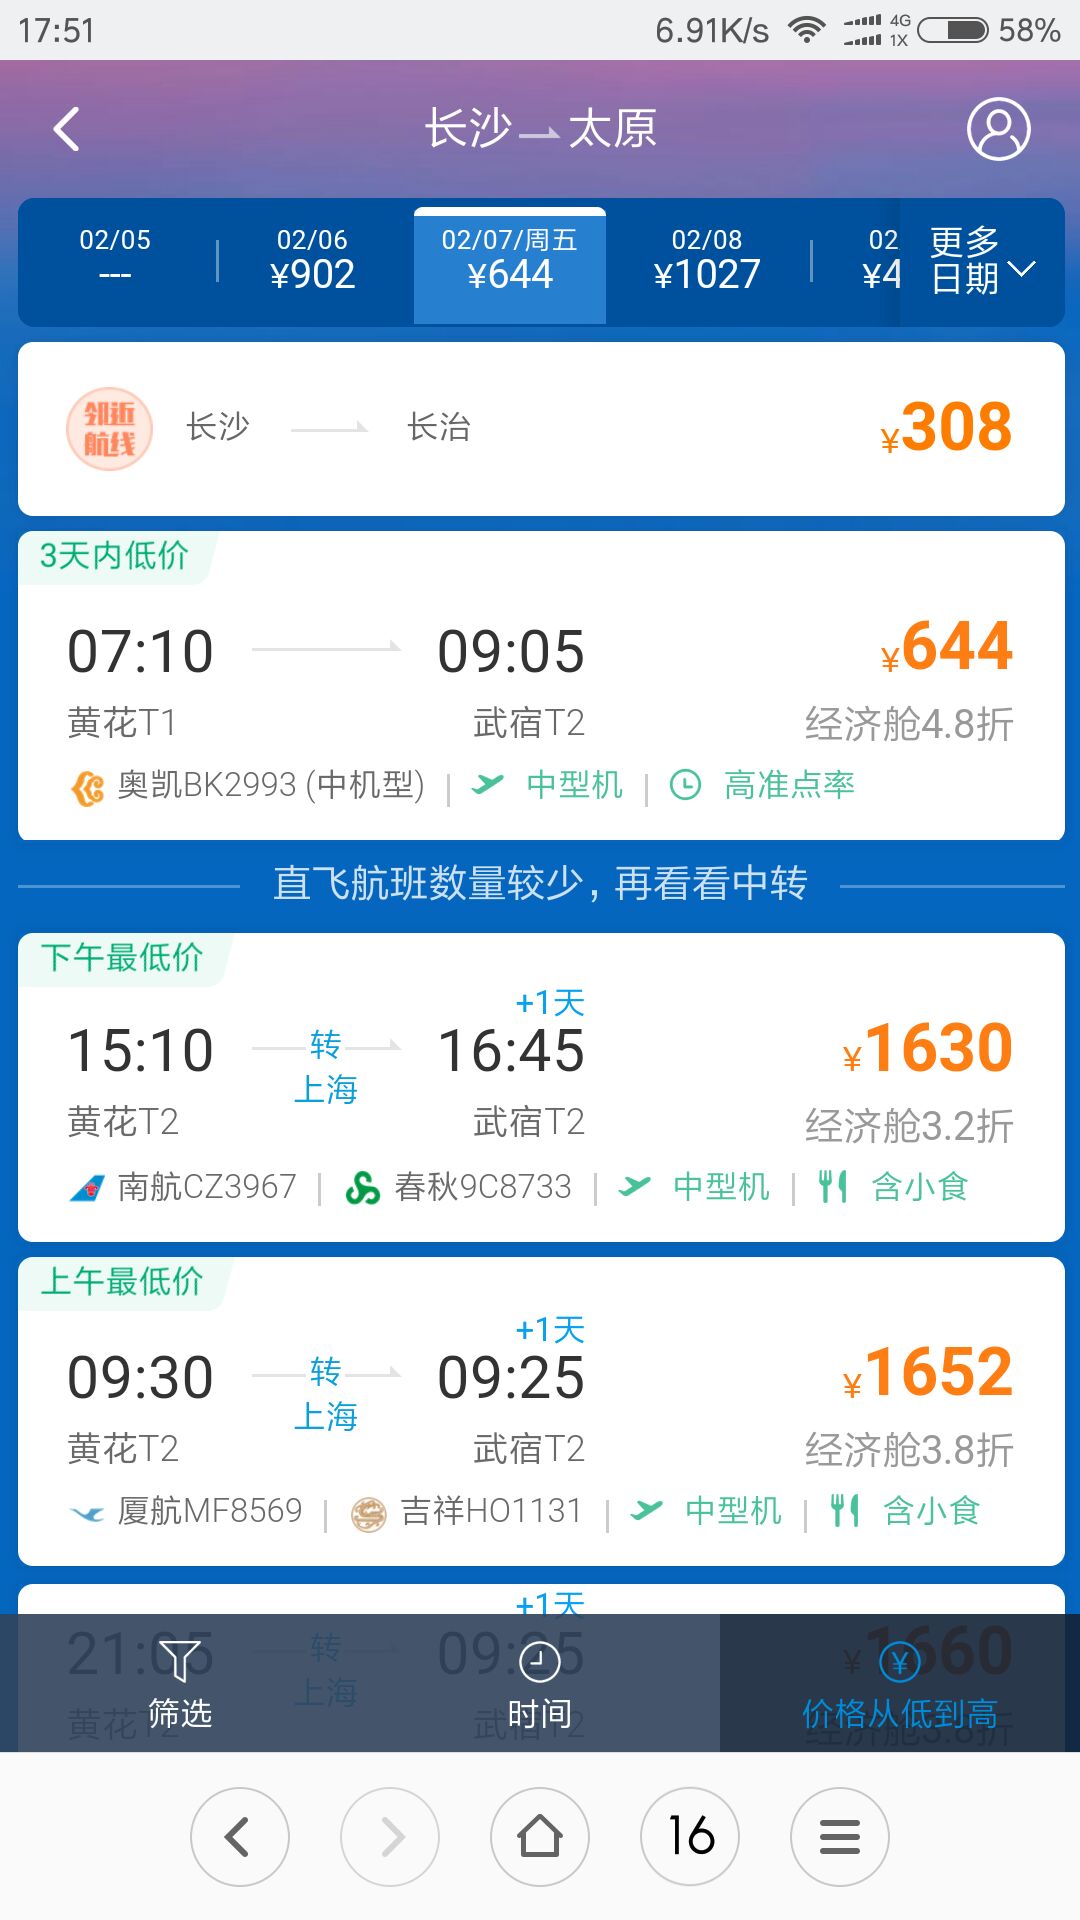 关于北京重庆机票全价是多少钱的信息